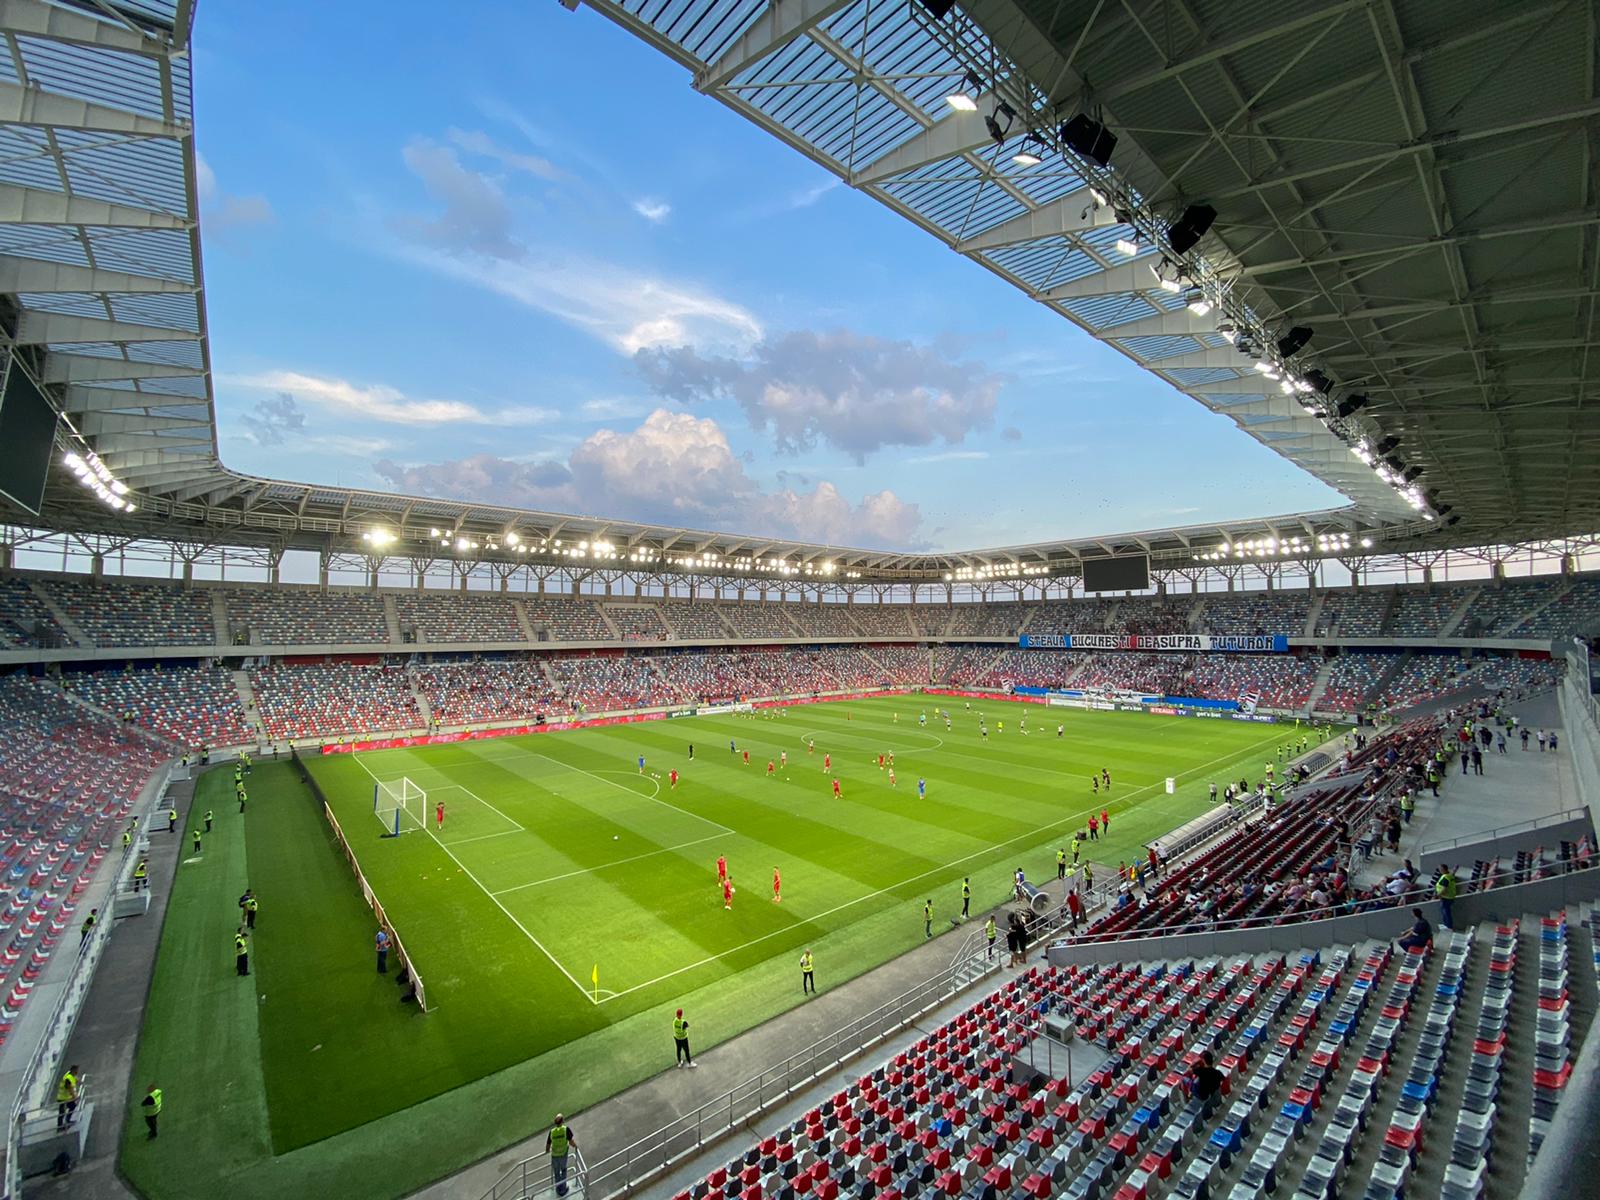 Hermannstadt joacă astăzi primul meci pe noul Stadion Municipal! Echipele  de start - Sibiu Independent